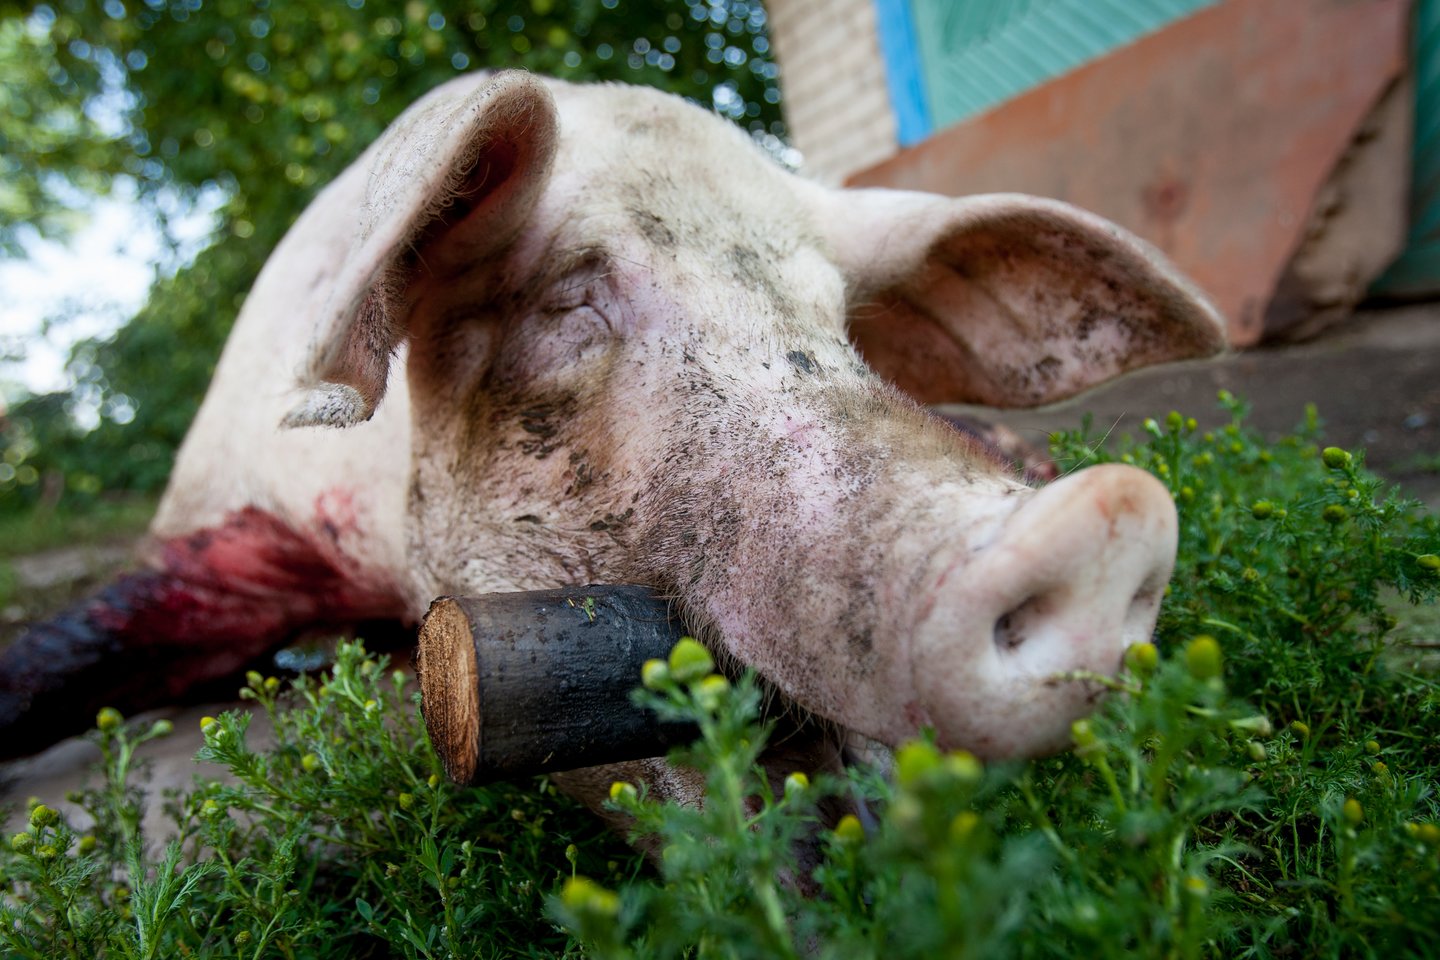 Kaimyninėje Baltarusijoje prasidėjus afrikinio kiaulių maro epidemijai Lietuvoje buvo minčių nutiesti tvorą palei visą pasienį. Bet tai nebuvo padaryta. Užtat danai šitaip nusprendė saugotis nuo vokiškų šernų.<br>D.Umbraso nuotr.